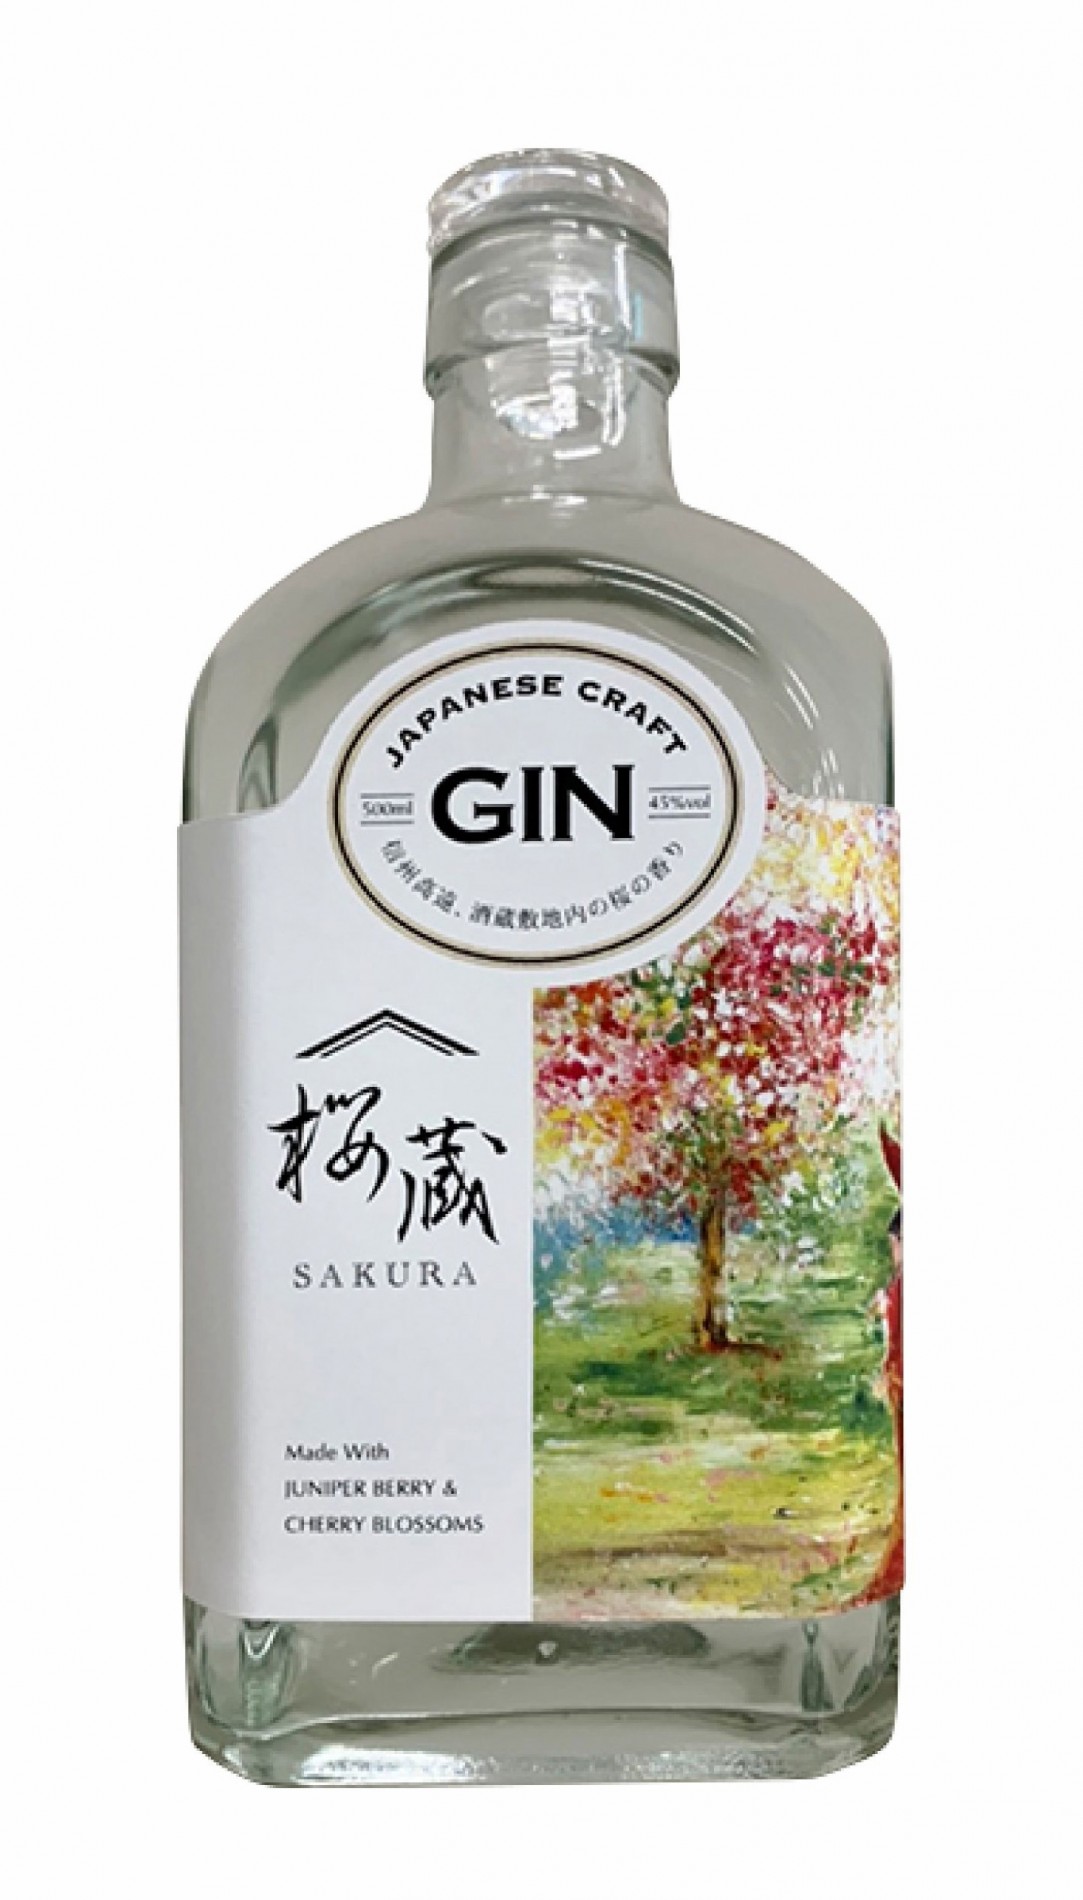 Sakura Japanese Craft Gin